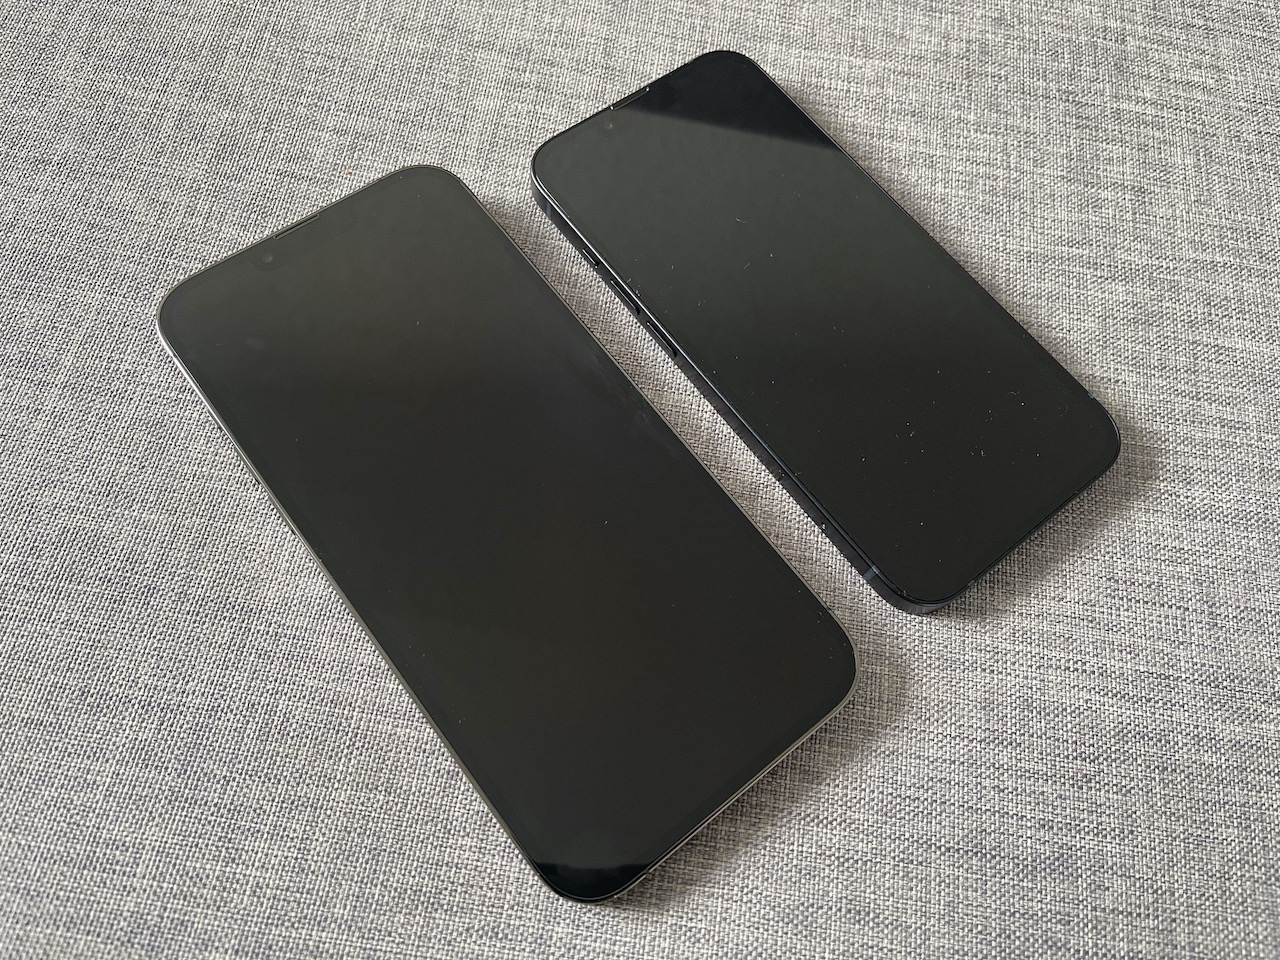 Iphone 14 | Apple is reportedly testing iPhone 14 OLED displays this week › Macerkopf | apple iphone |